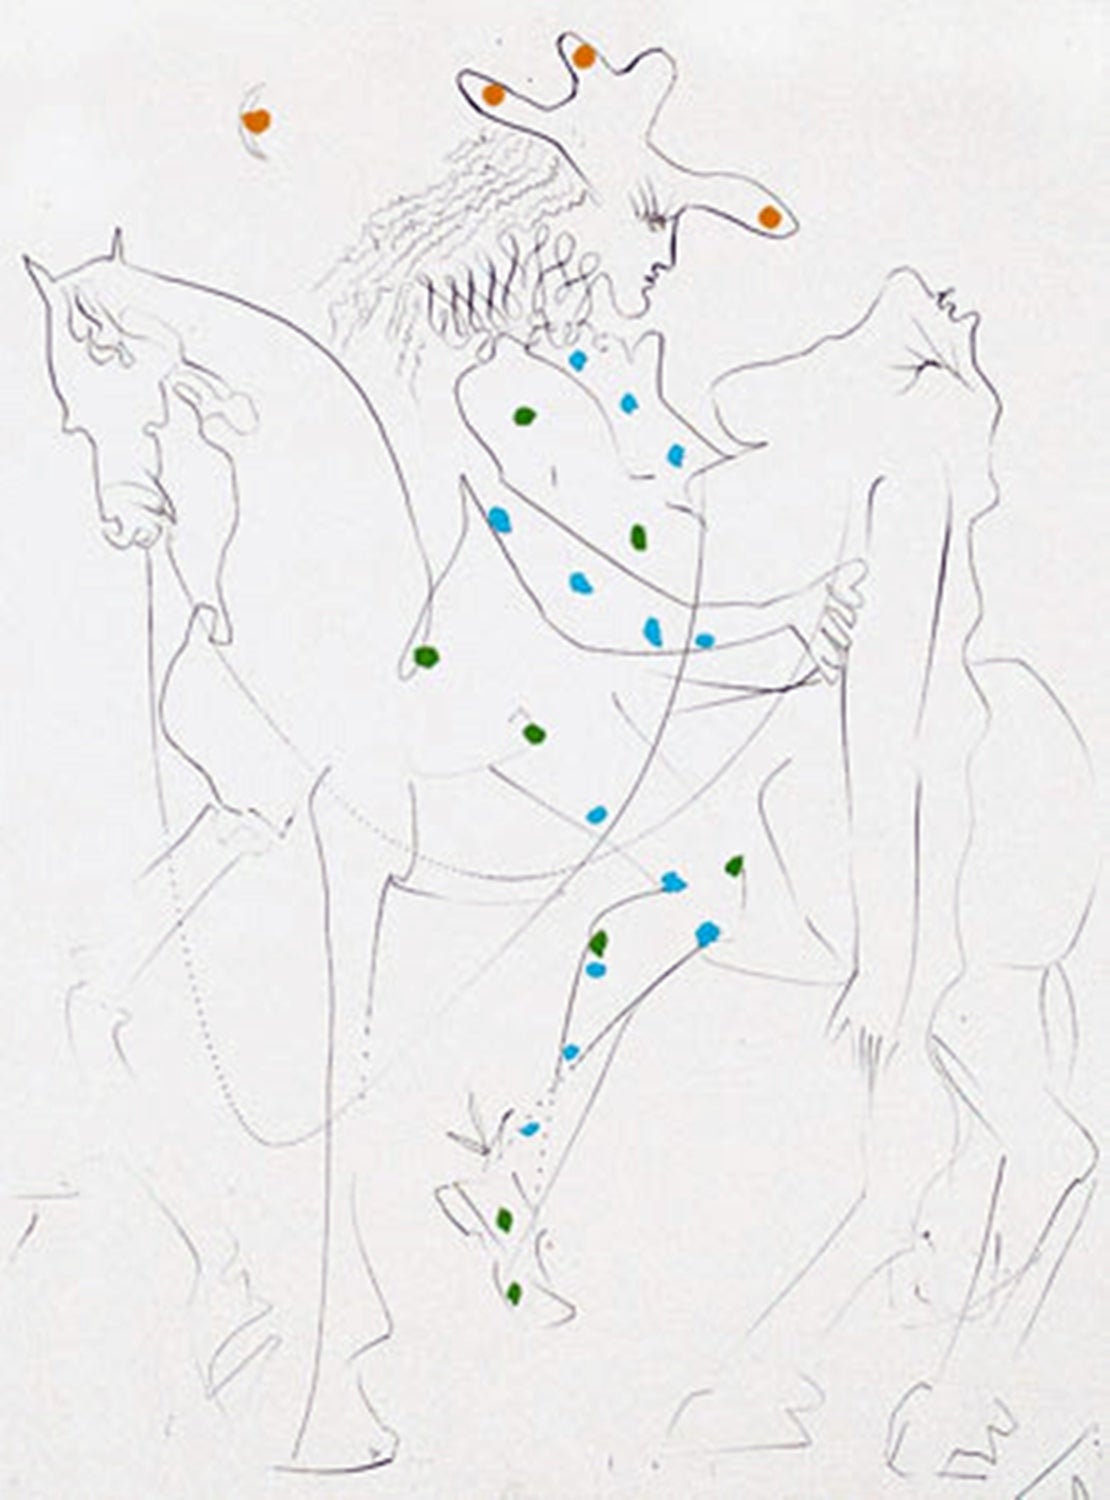 Le Cheval de Picasso (Picasso’s Horse) - Print by Salvador Dalí